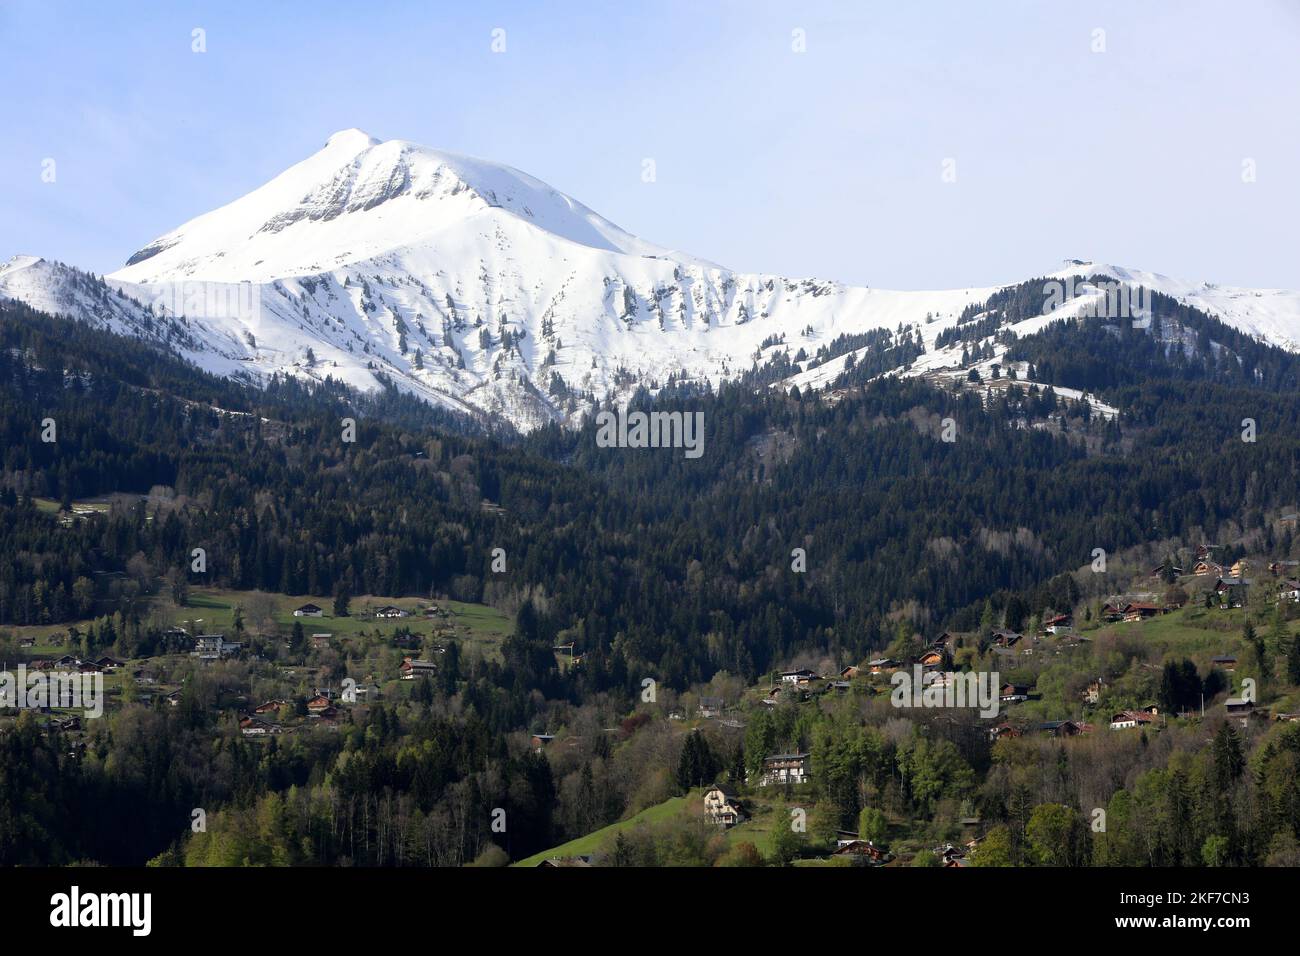 Le Mont Joly et le Bettex. Alpes Françaises. Saint-Gervais-les-Bains. Haute-Savoie. Auvergne-Rhône-Alpes. France. Europe. Stock Photo